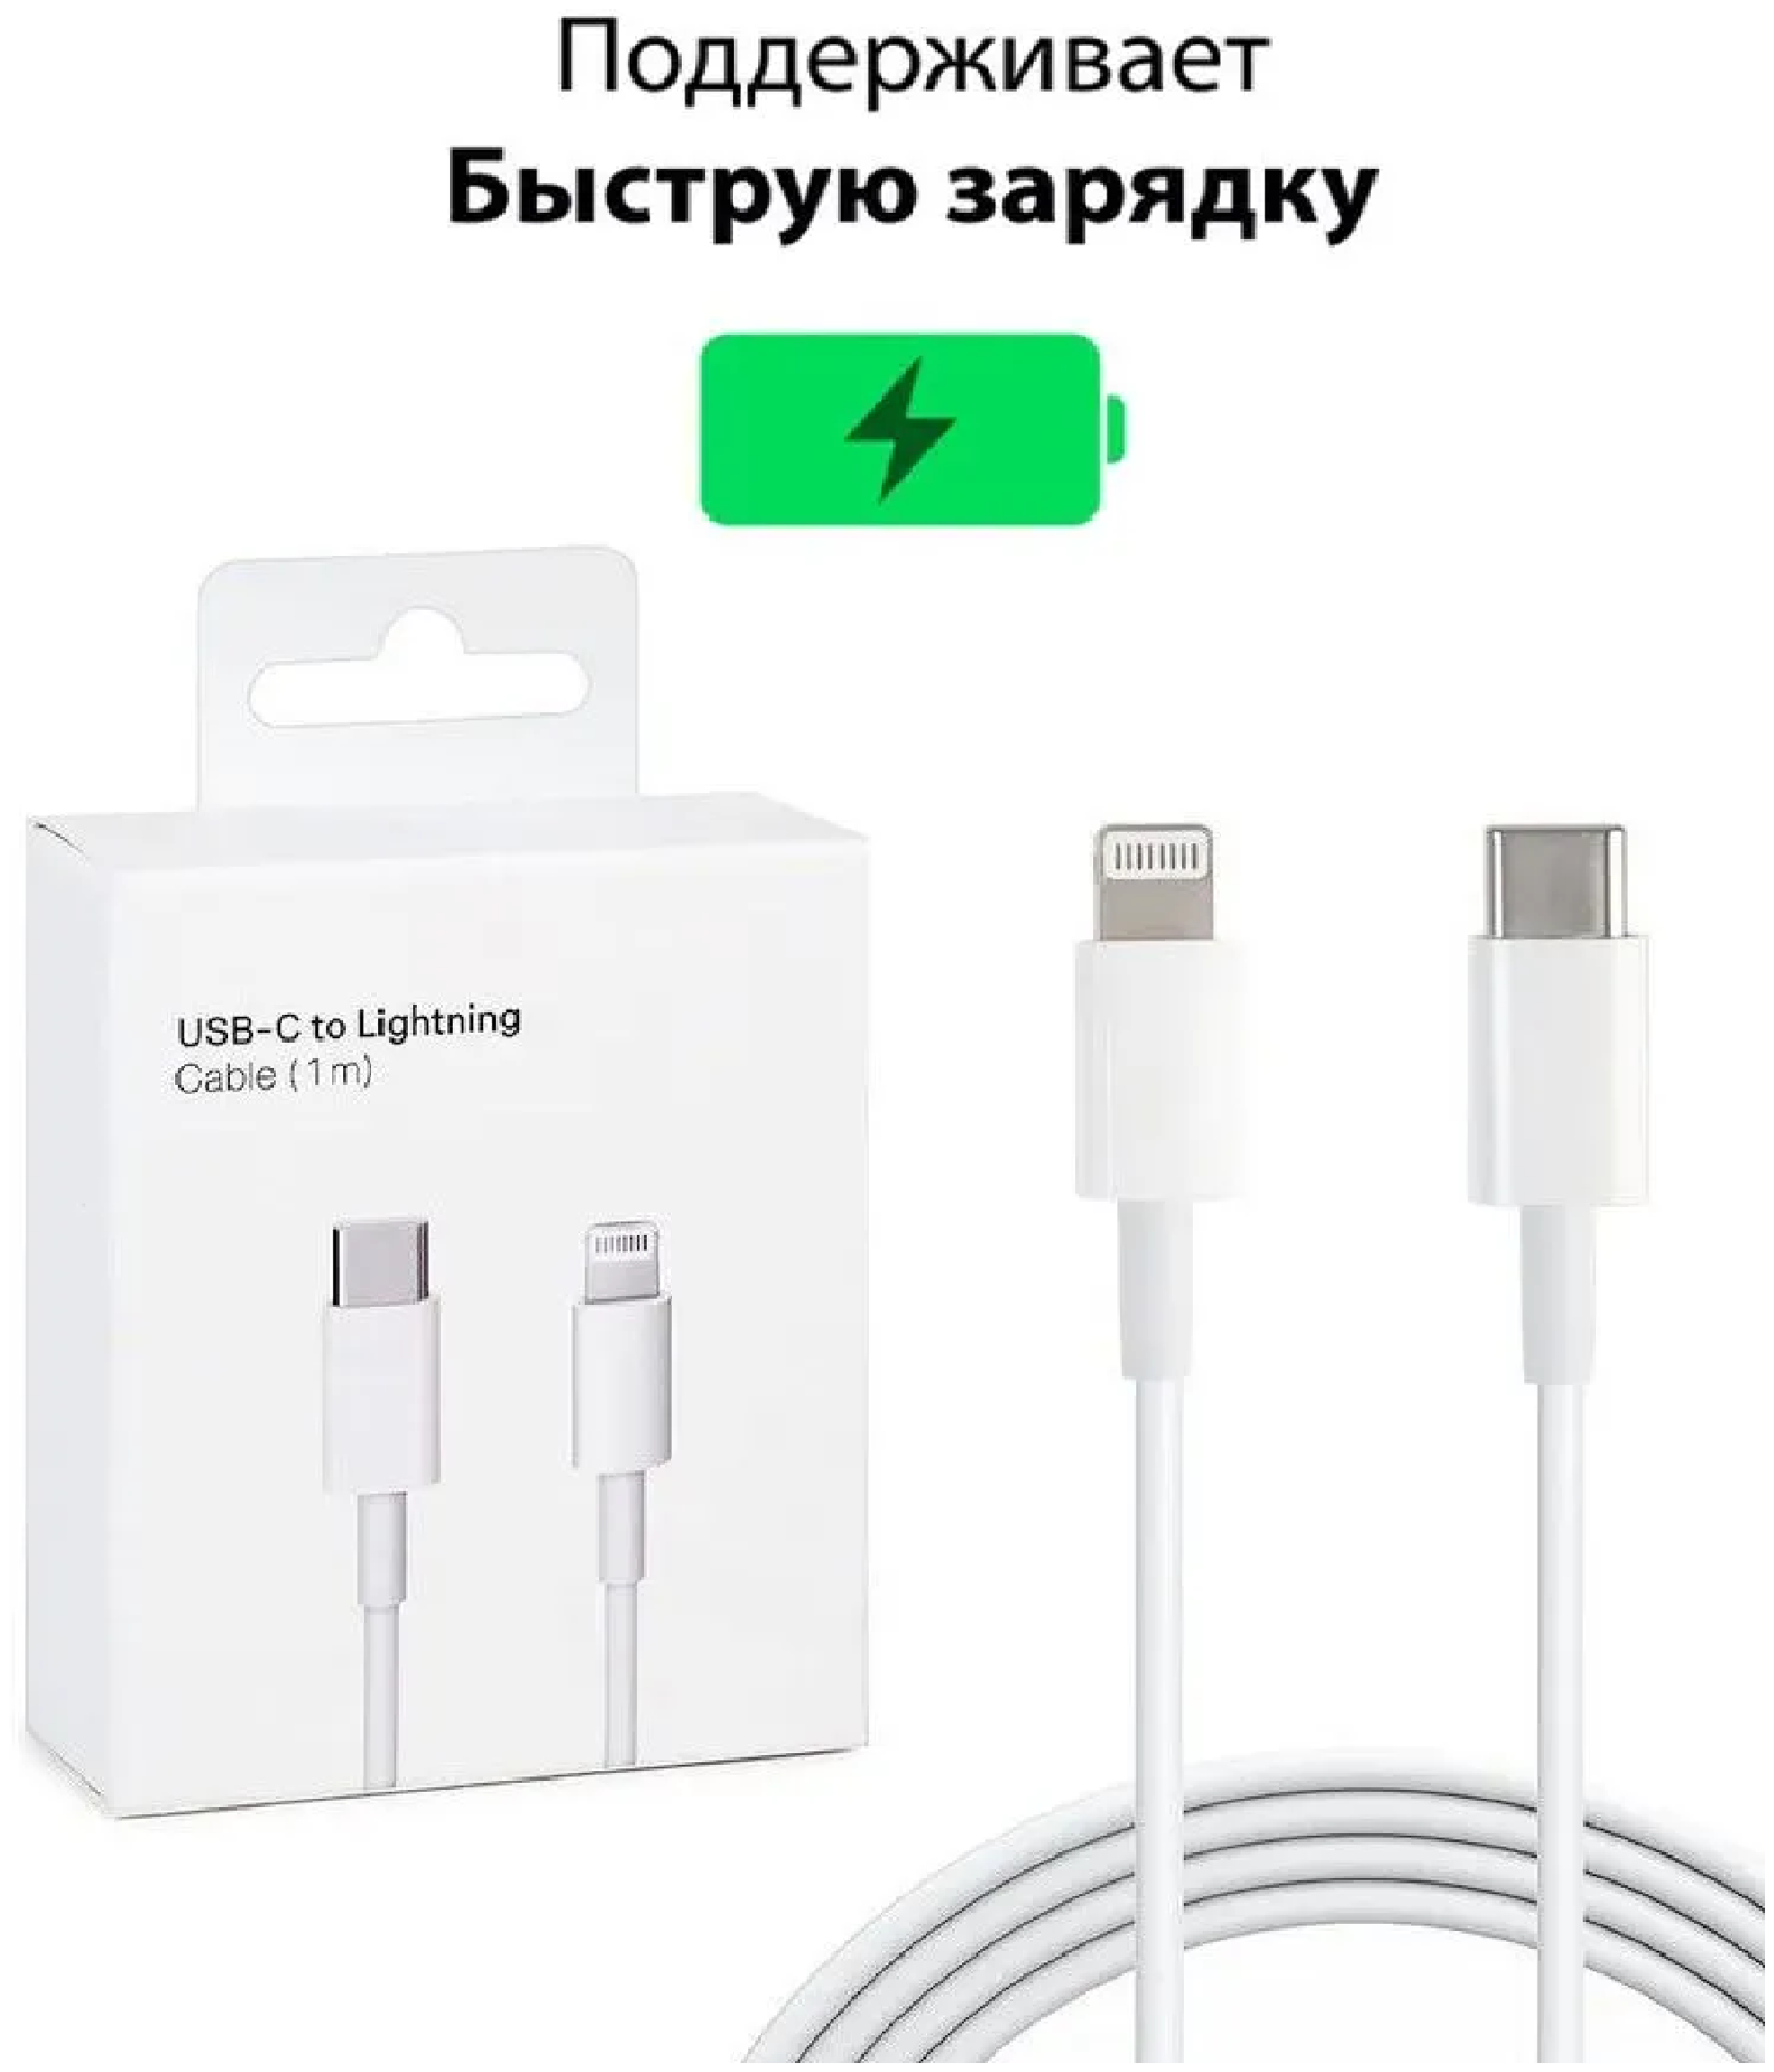 Кабель Type-C / lightning для Apple iPhone, iPad и AirPods, кабель для быстрой зарядки, провод для айфона, 1 метр White белый В коробке